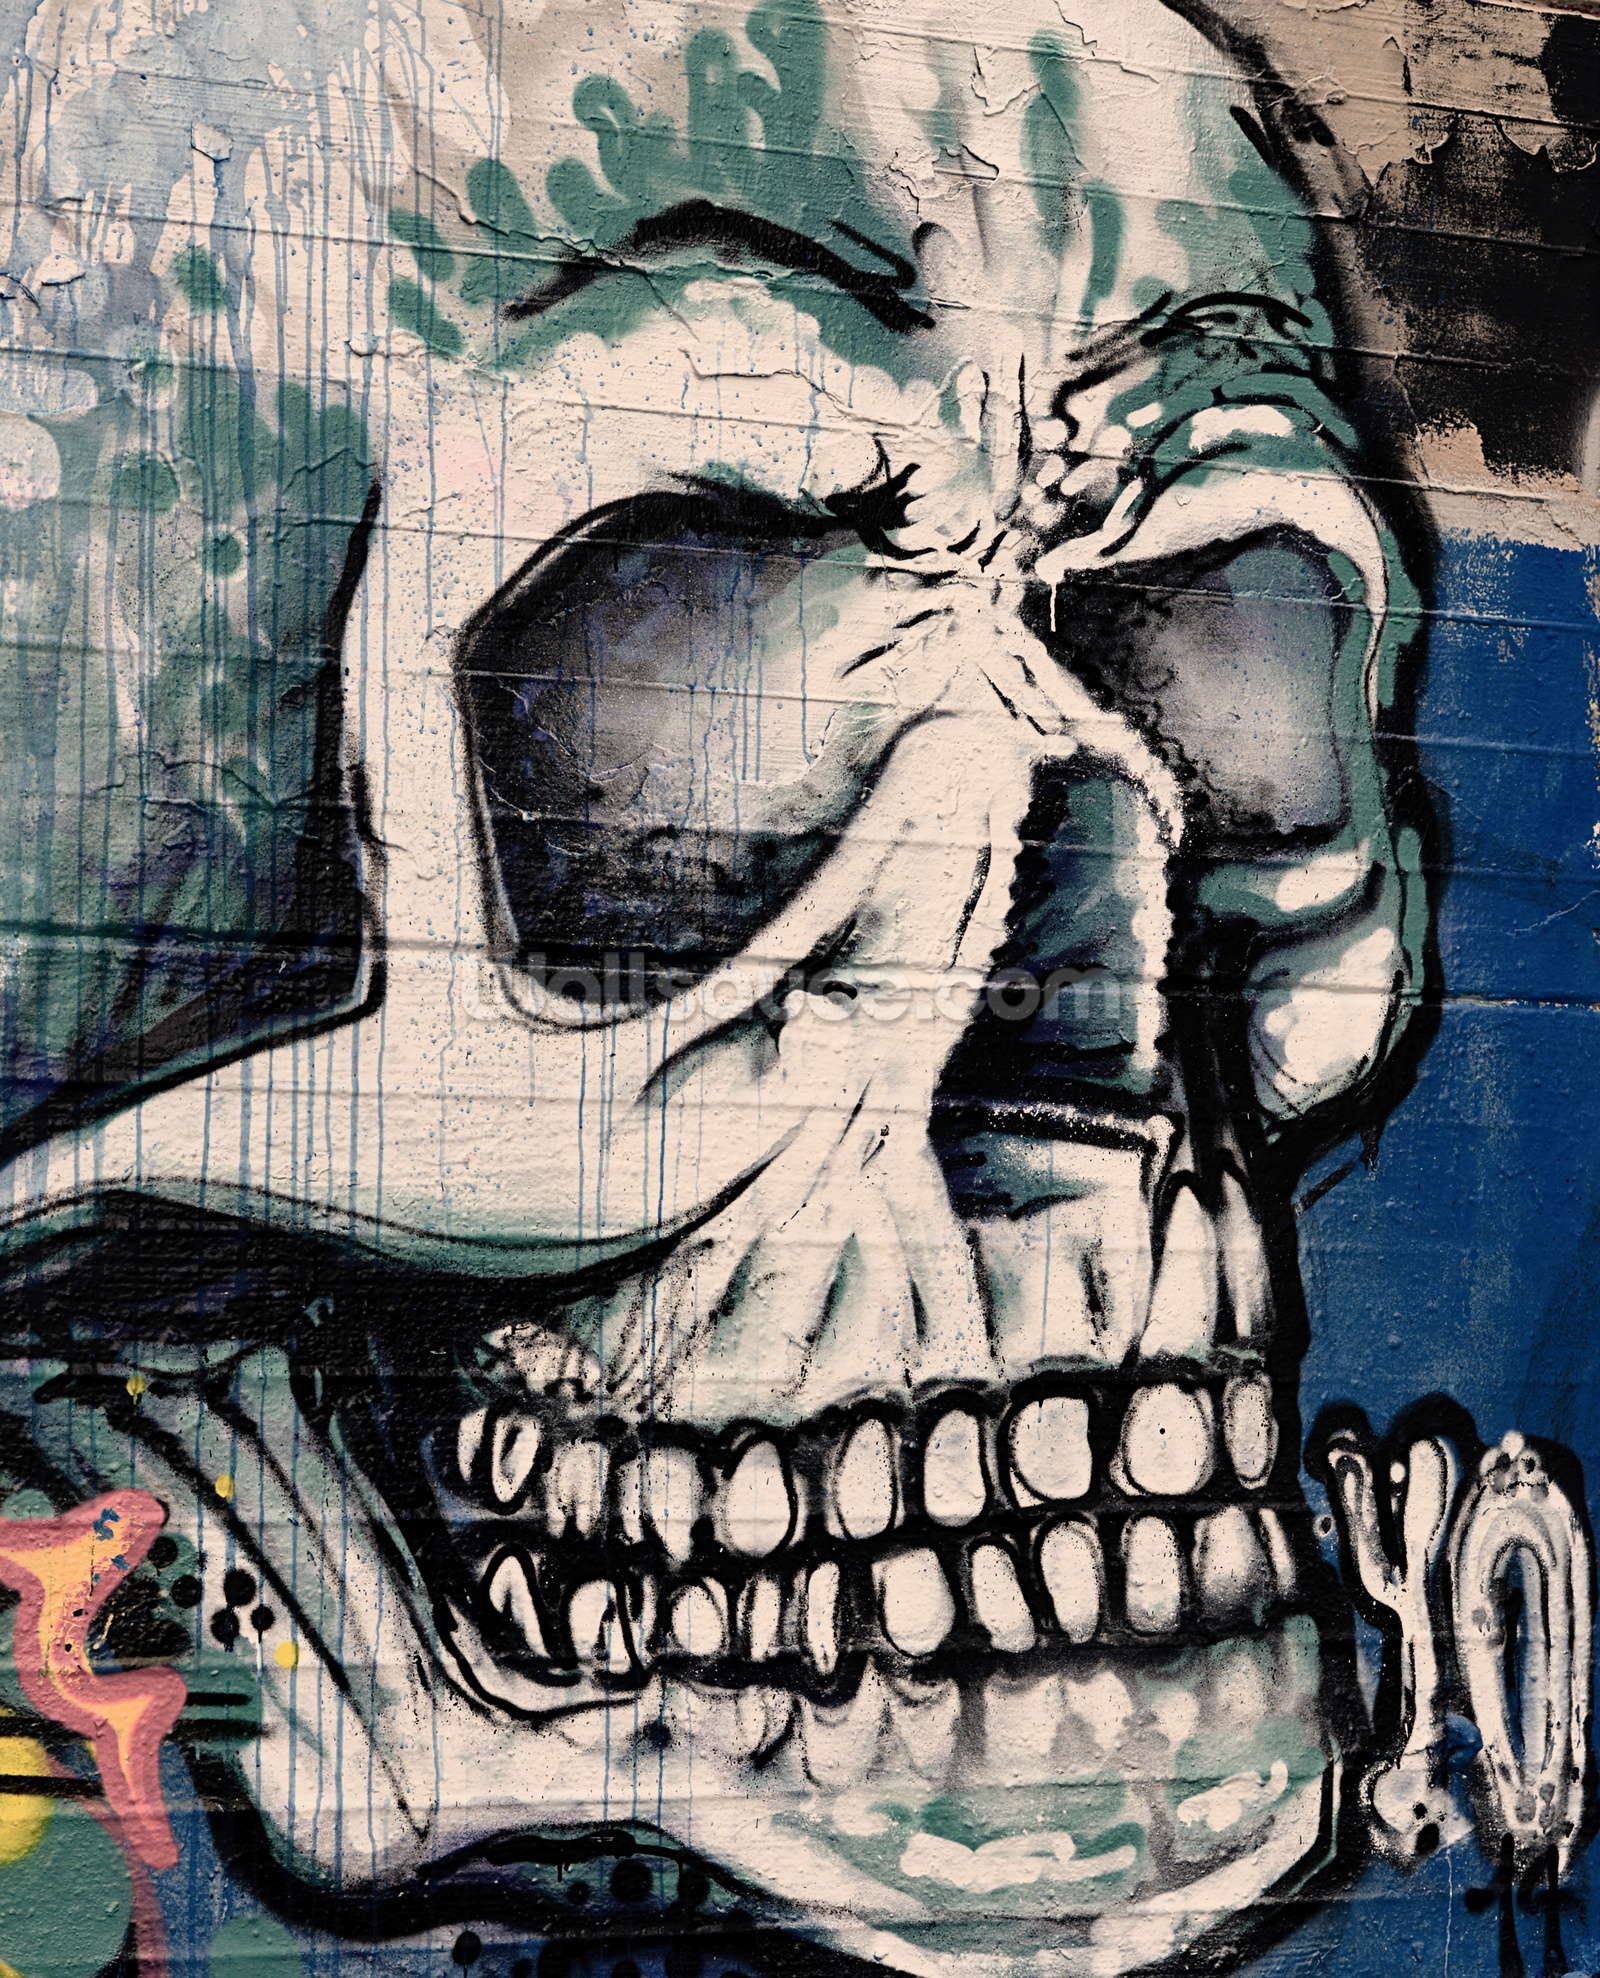 Graffiti Art Wallpaper Graffiti - Skull Face Wallpaper Wall Mural ...